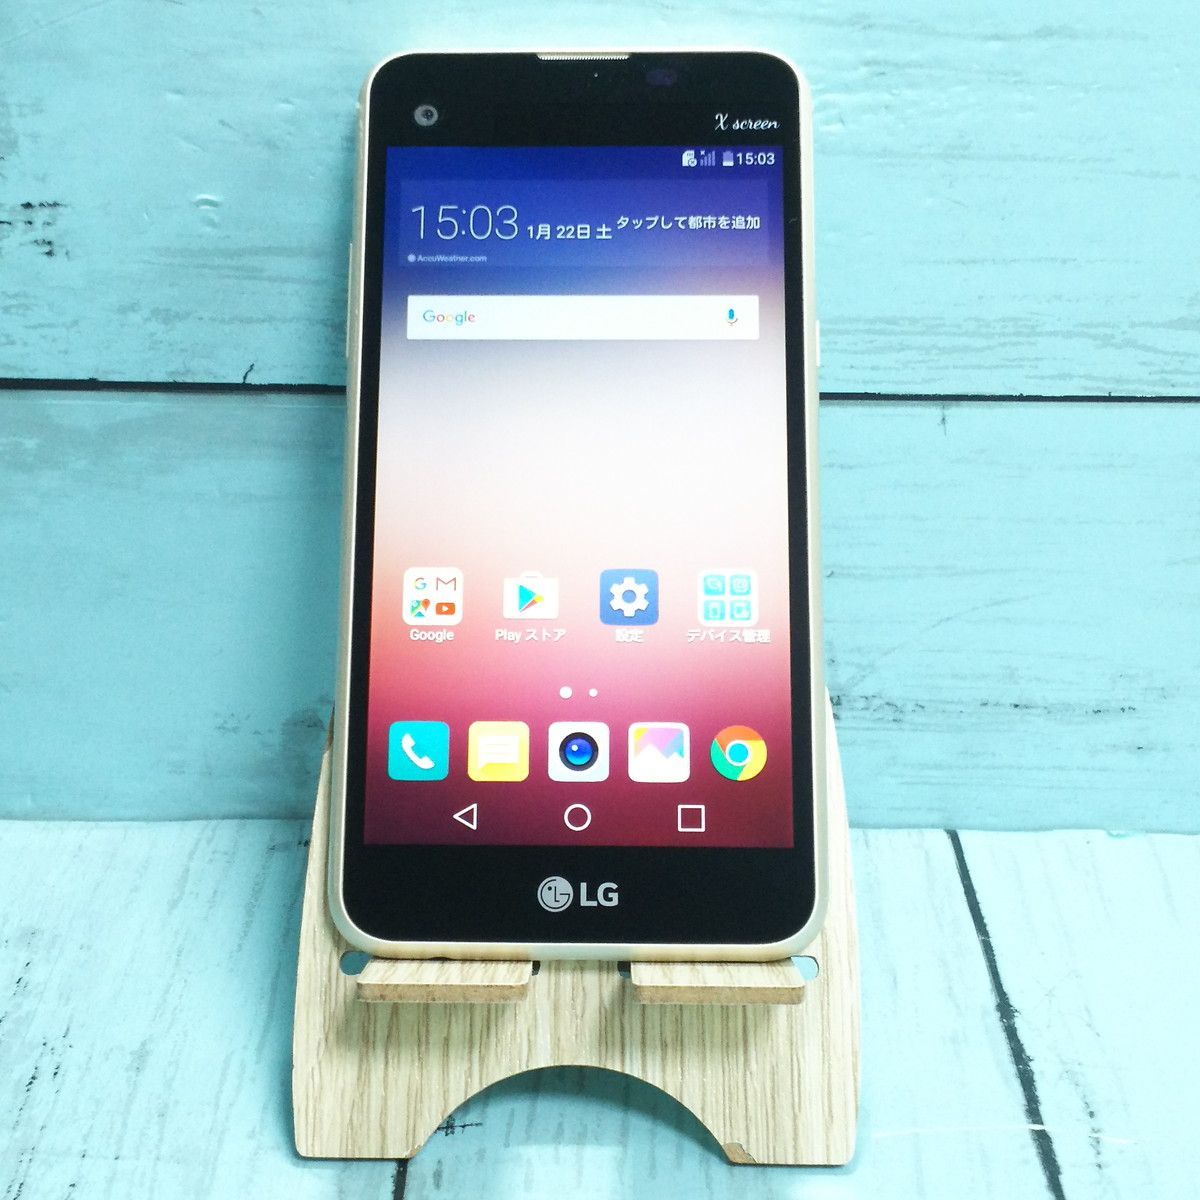 LG電子 LG X screen LGS02 Chanpaign gold J:COMモデル 本体 白ロム 